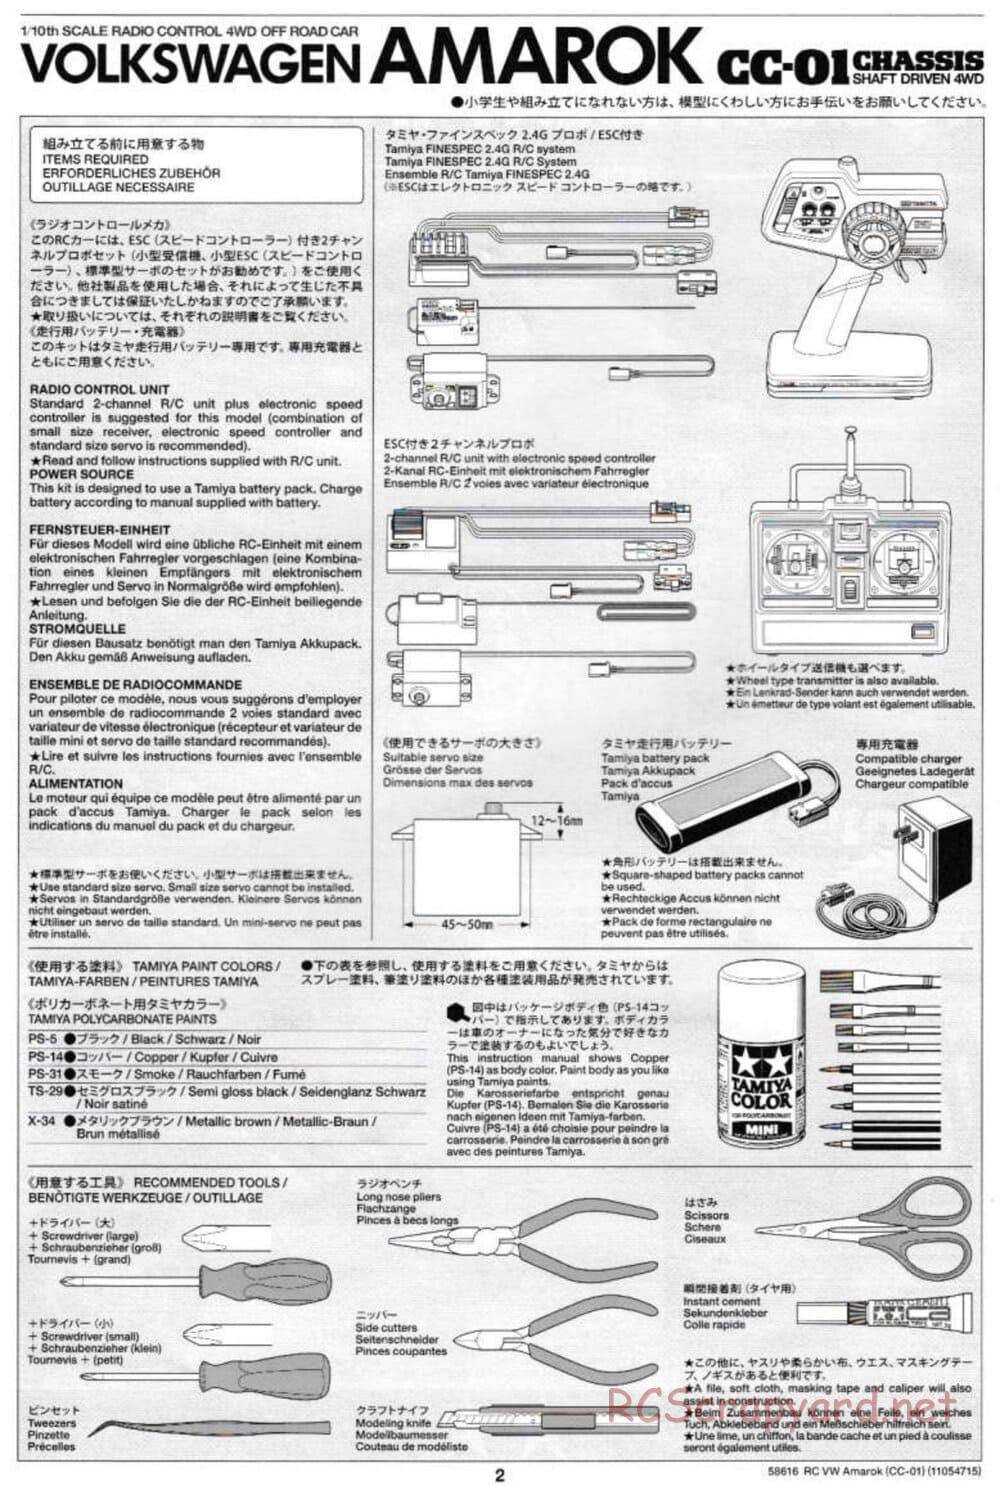 Tamiya - Volkswagen Amarok - CC-01 Chassis - Manual - Page 2